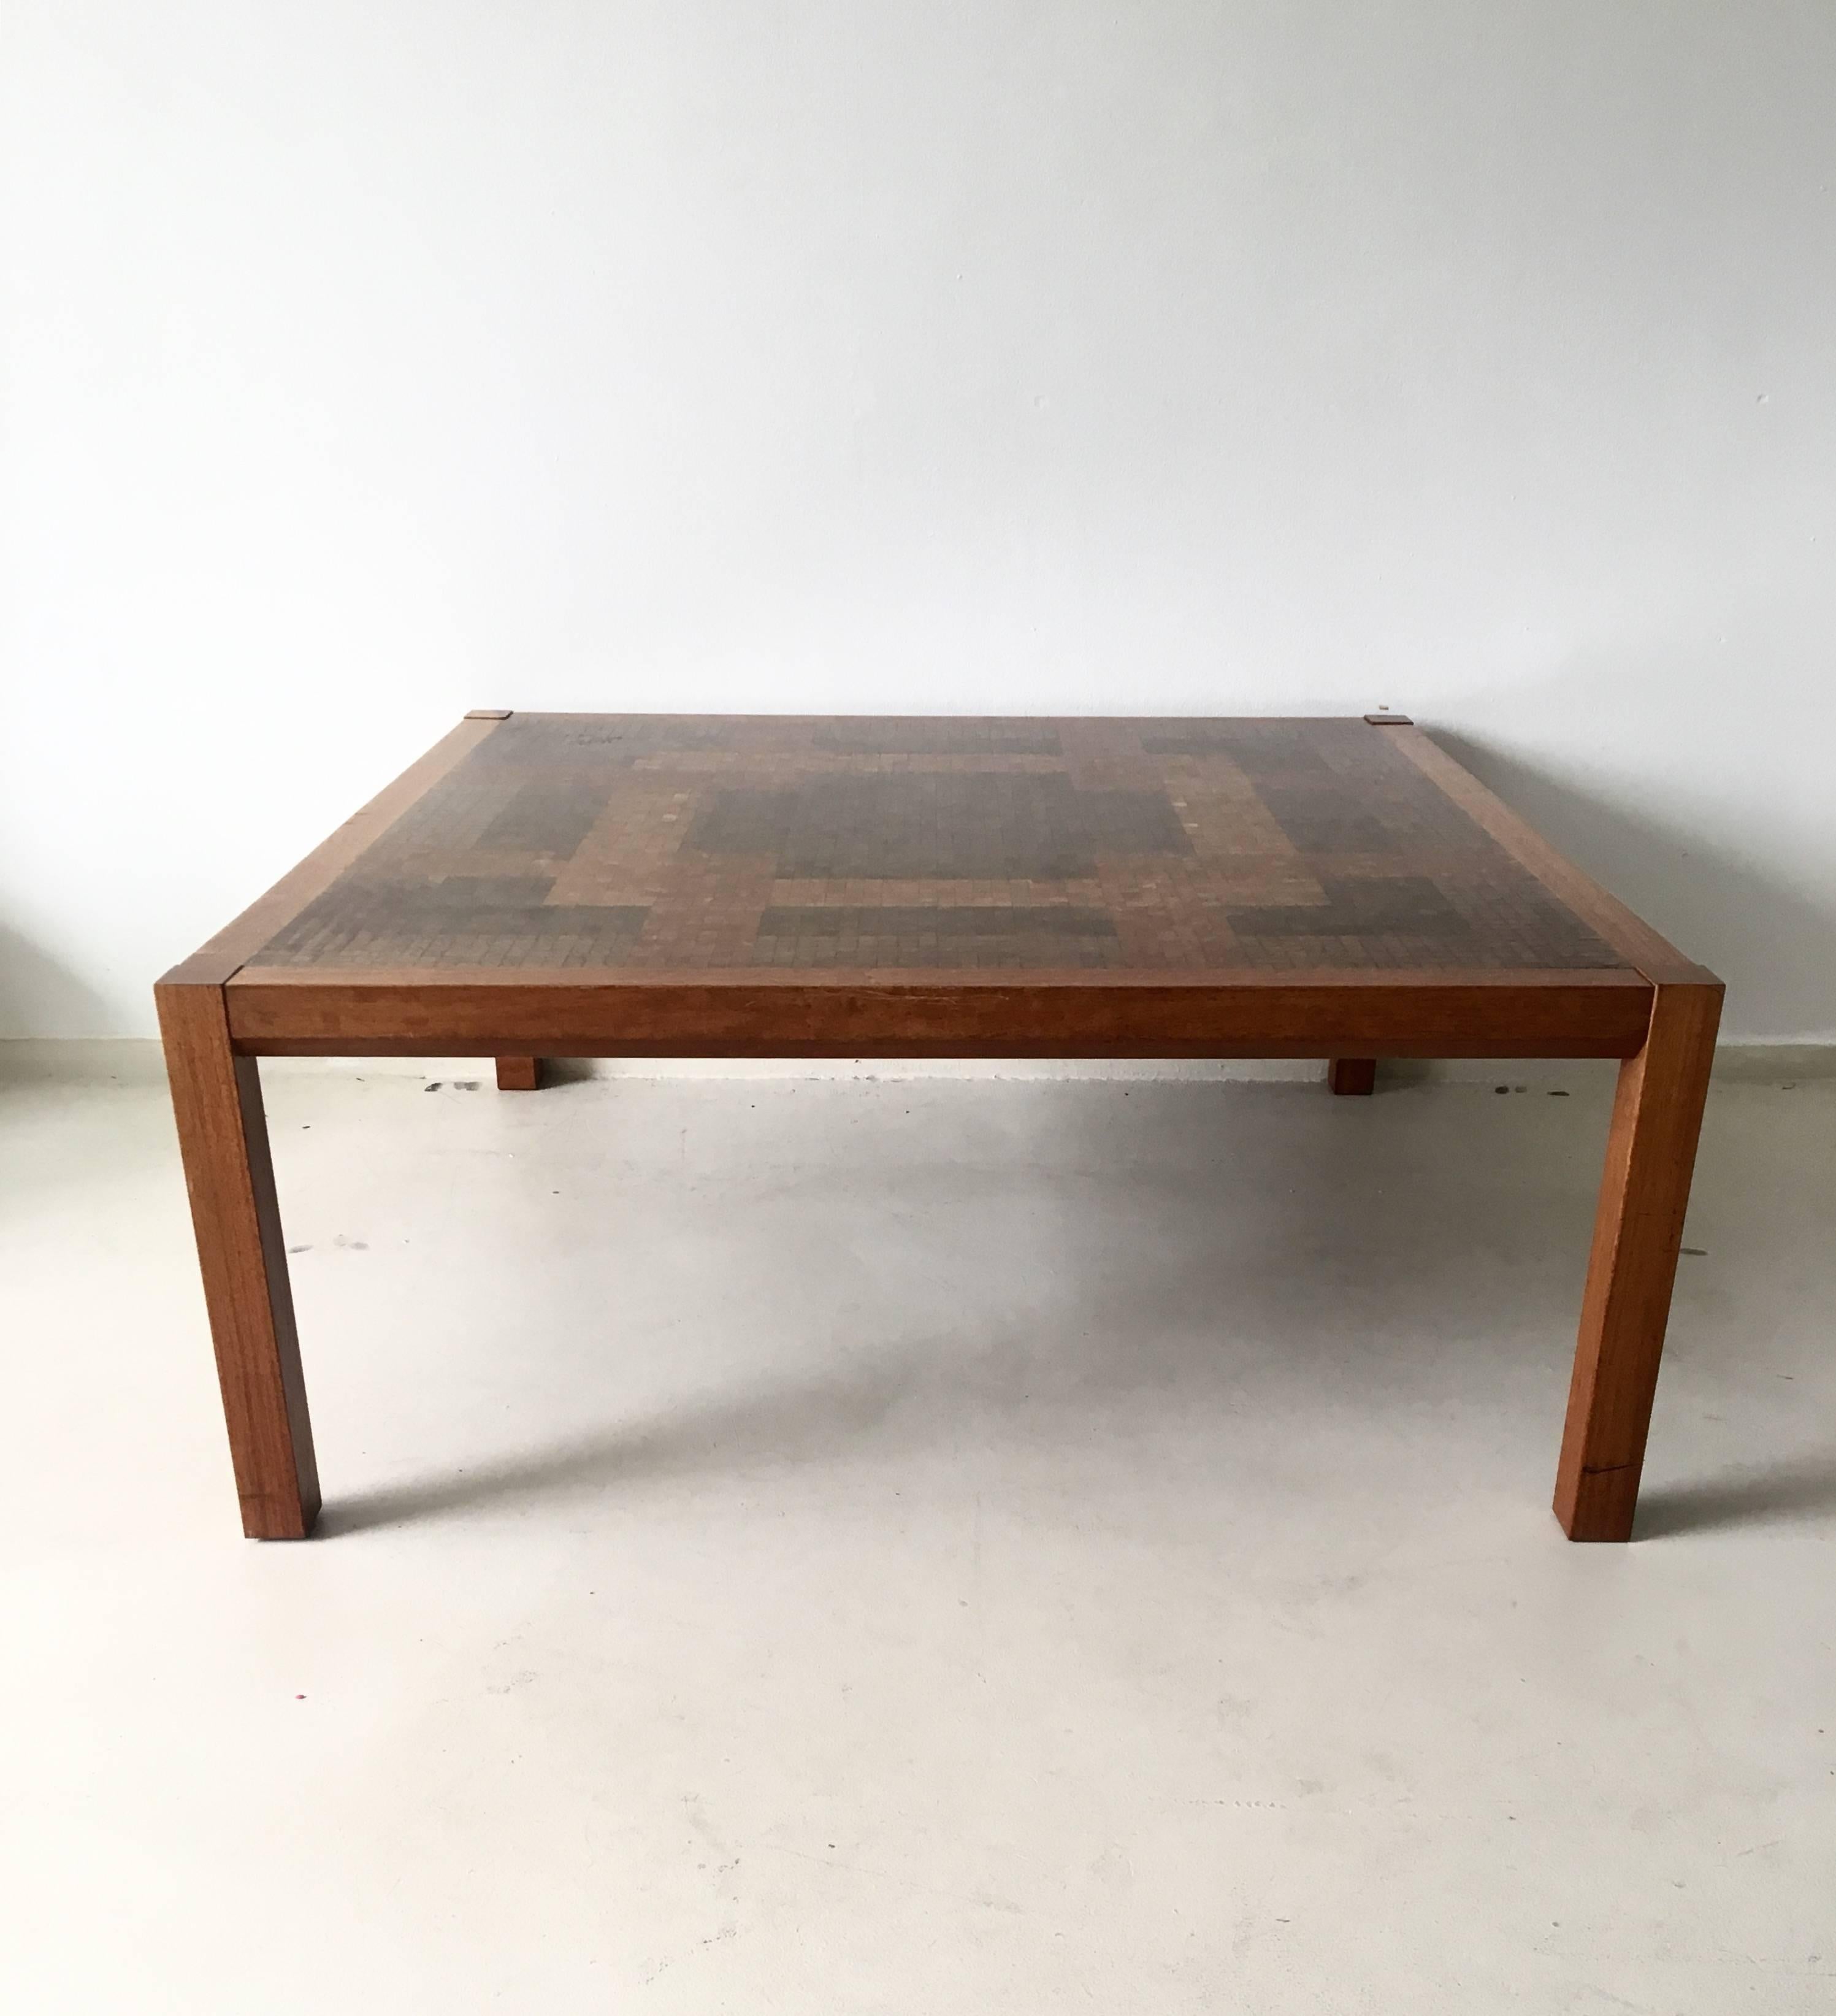 Dieser große künstlerische Tisch wurde von Rolf Middelboe für Tranekaer Möbel Dänemark entworfen, ca. 1970er Jahre.

Der Tisch besteht aus mehreren Holzarten von Obstbäumen und Granaten, die in der Tischplatte zu einem Mosaikmuster verarbeitet